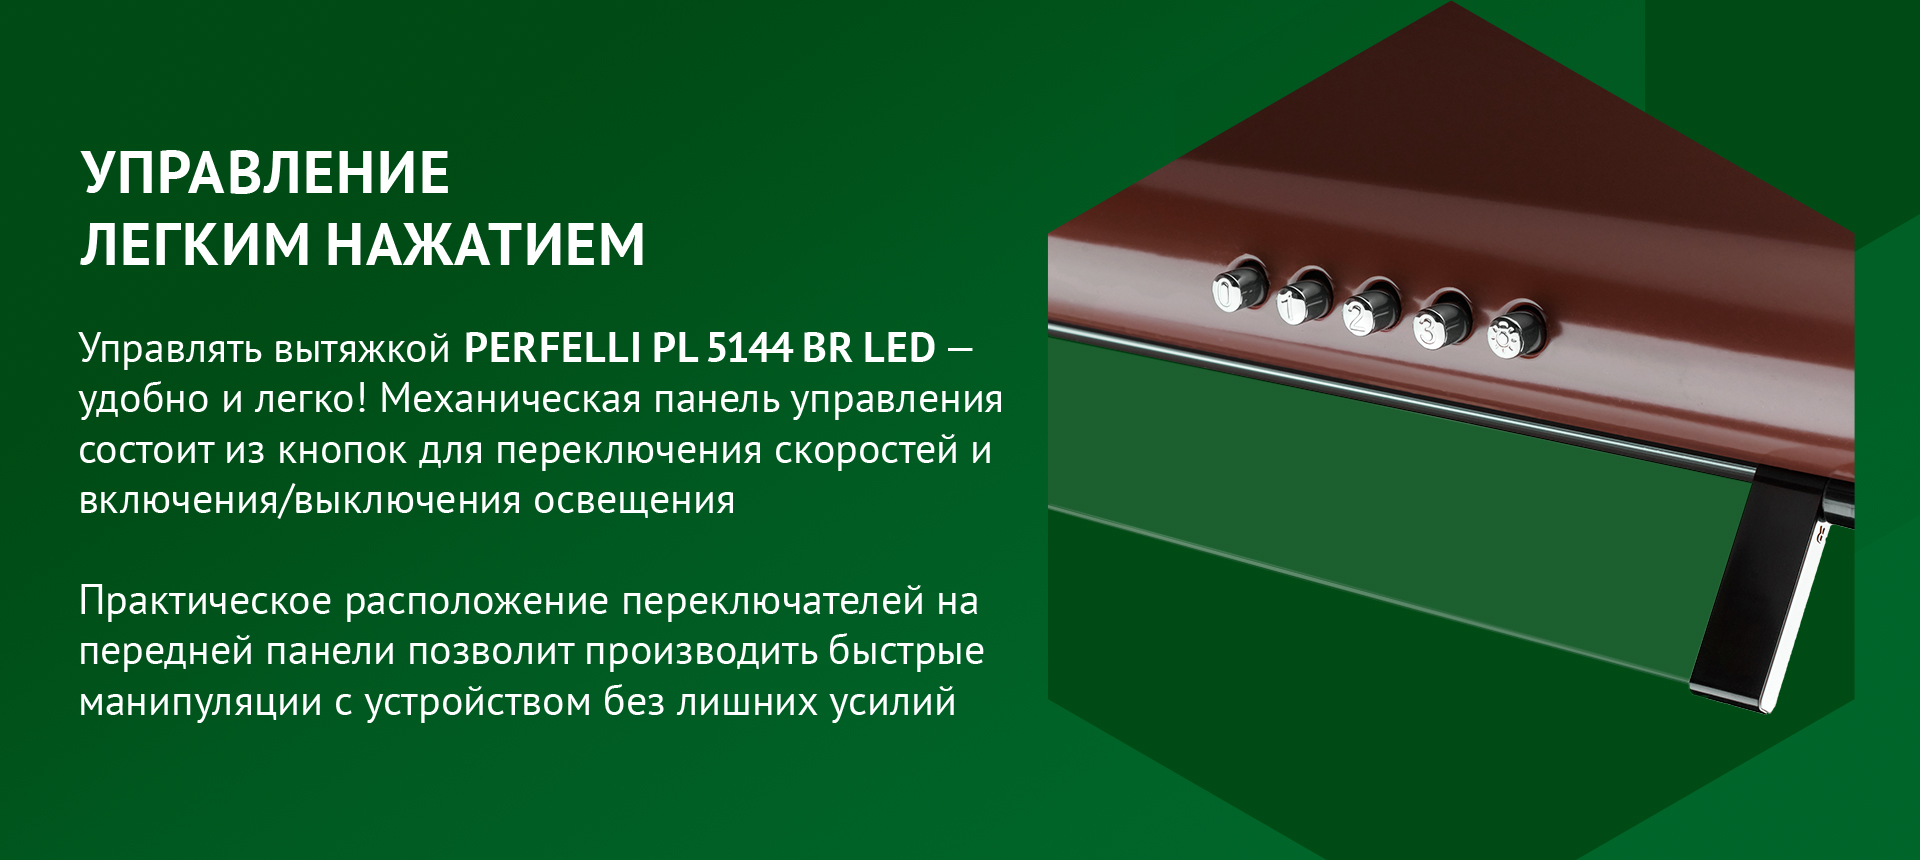 Управлять вытяжкой PERFELLI PL 5144 BR LED – удобно и легко! Механическая панель управления состоит из кнопок для переключения скоростей и включения/выключения освещения. Практическое расположение переключателей на передней панели позволит производить быстрые манипуляции с устройством без лишних усилий